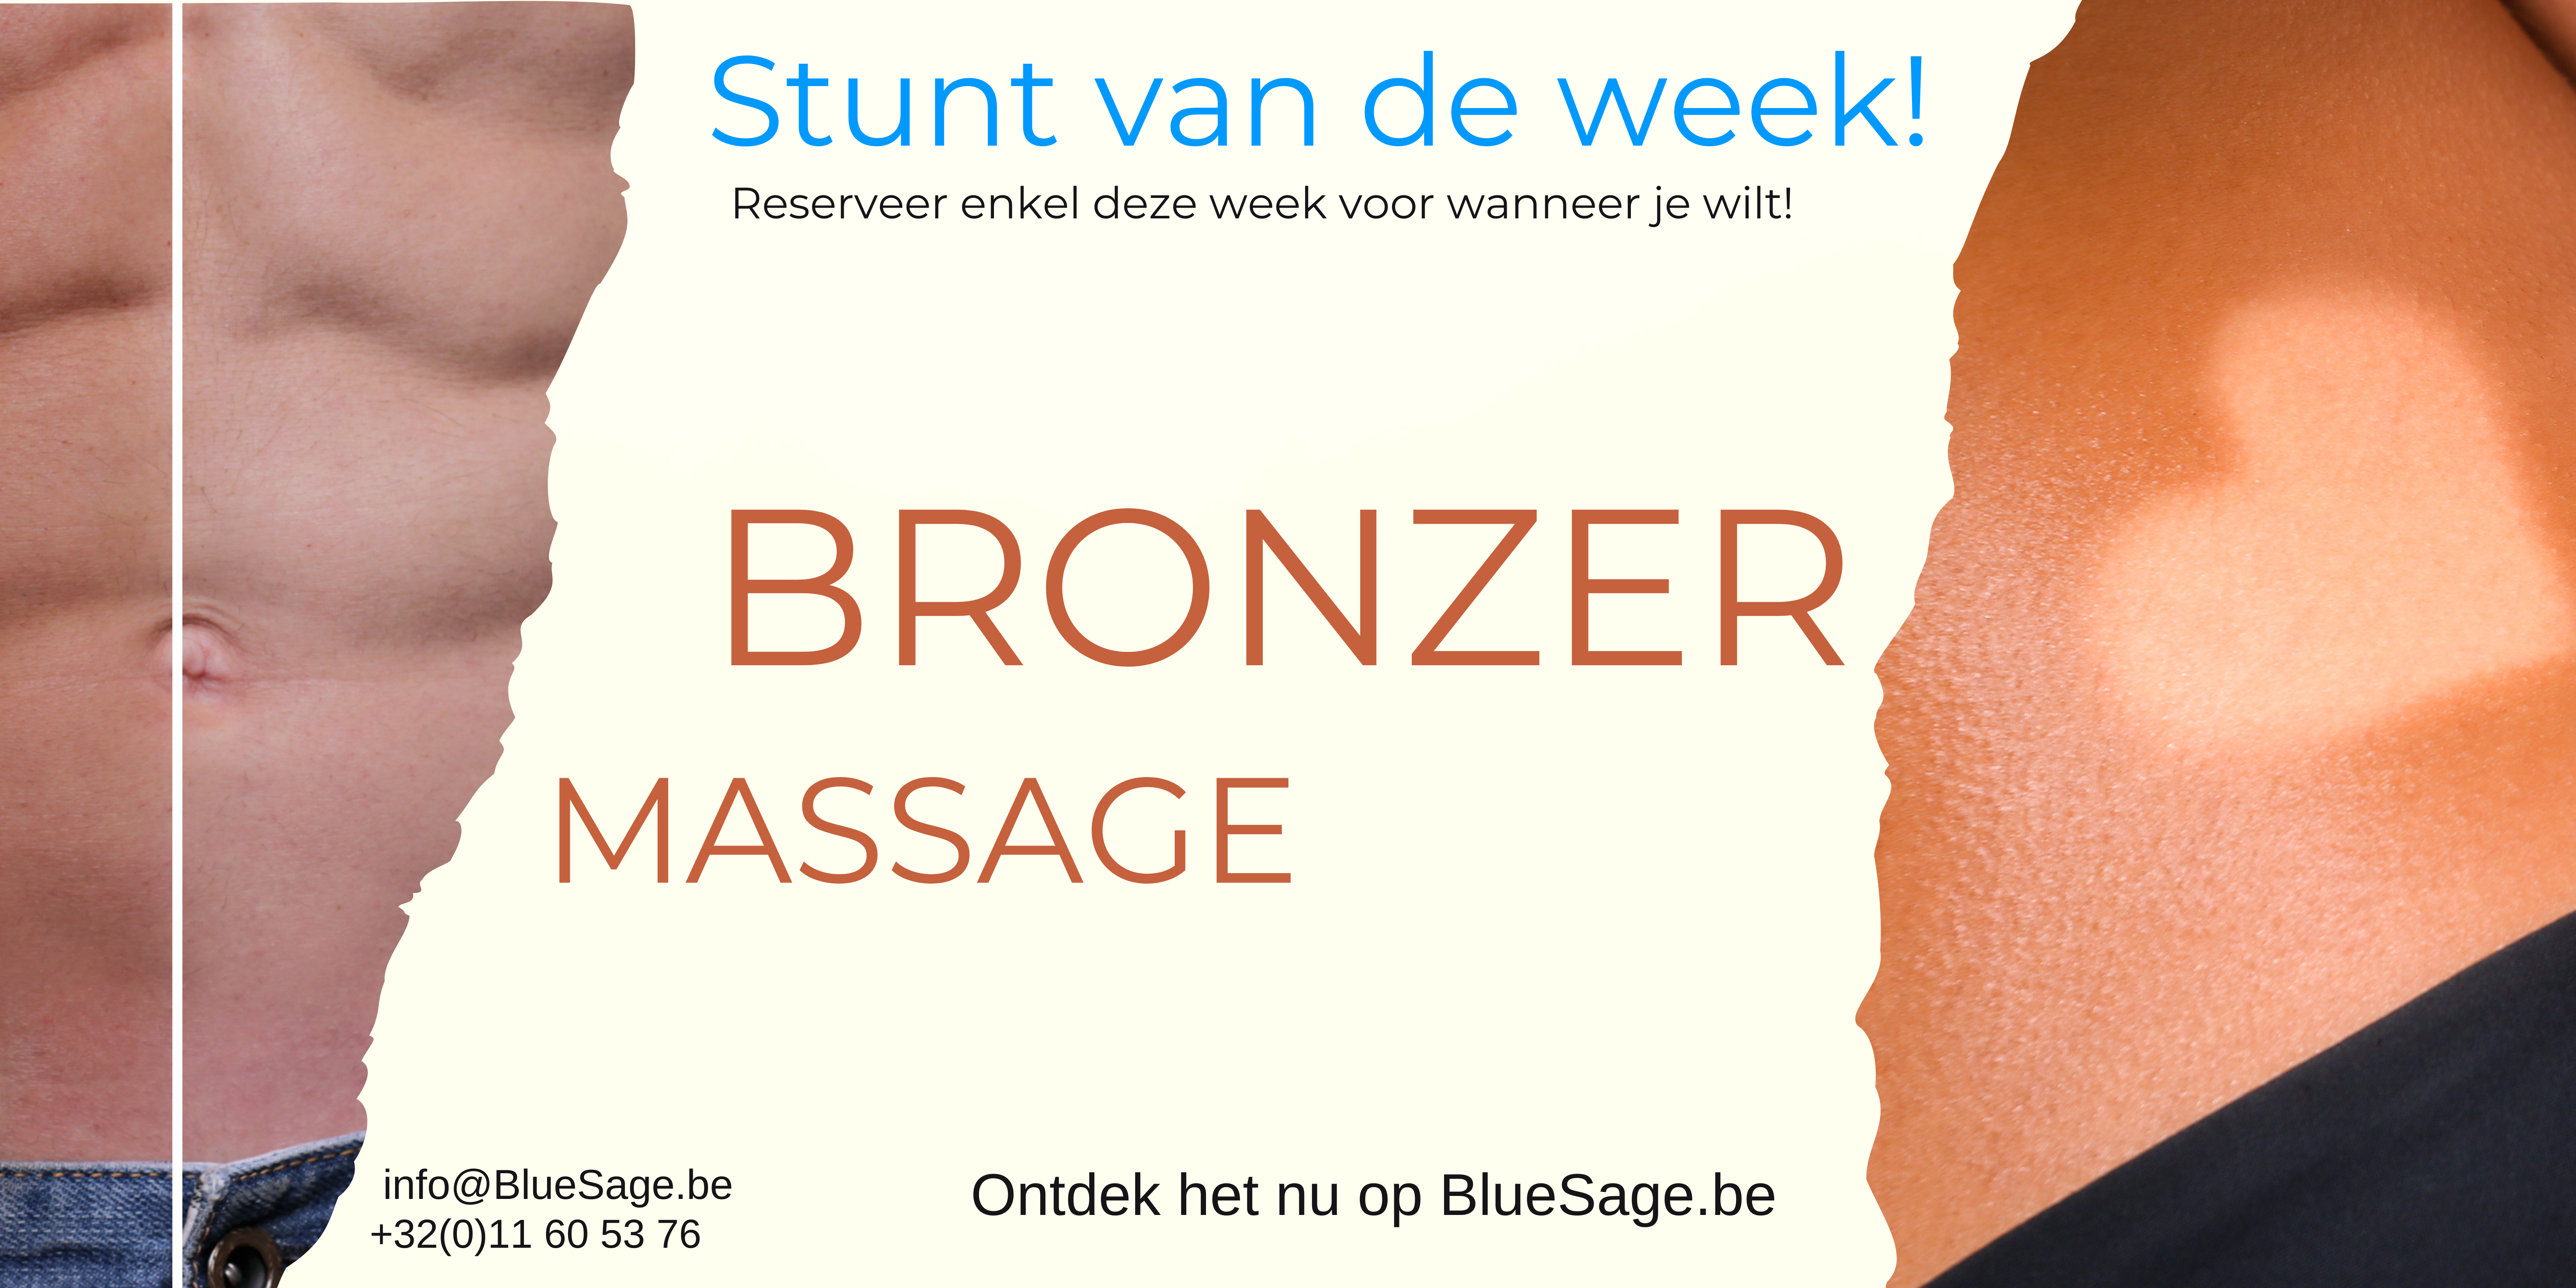 stunt van de week banner, bronzer massage